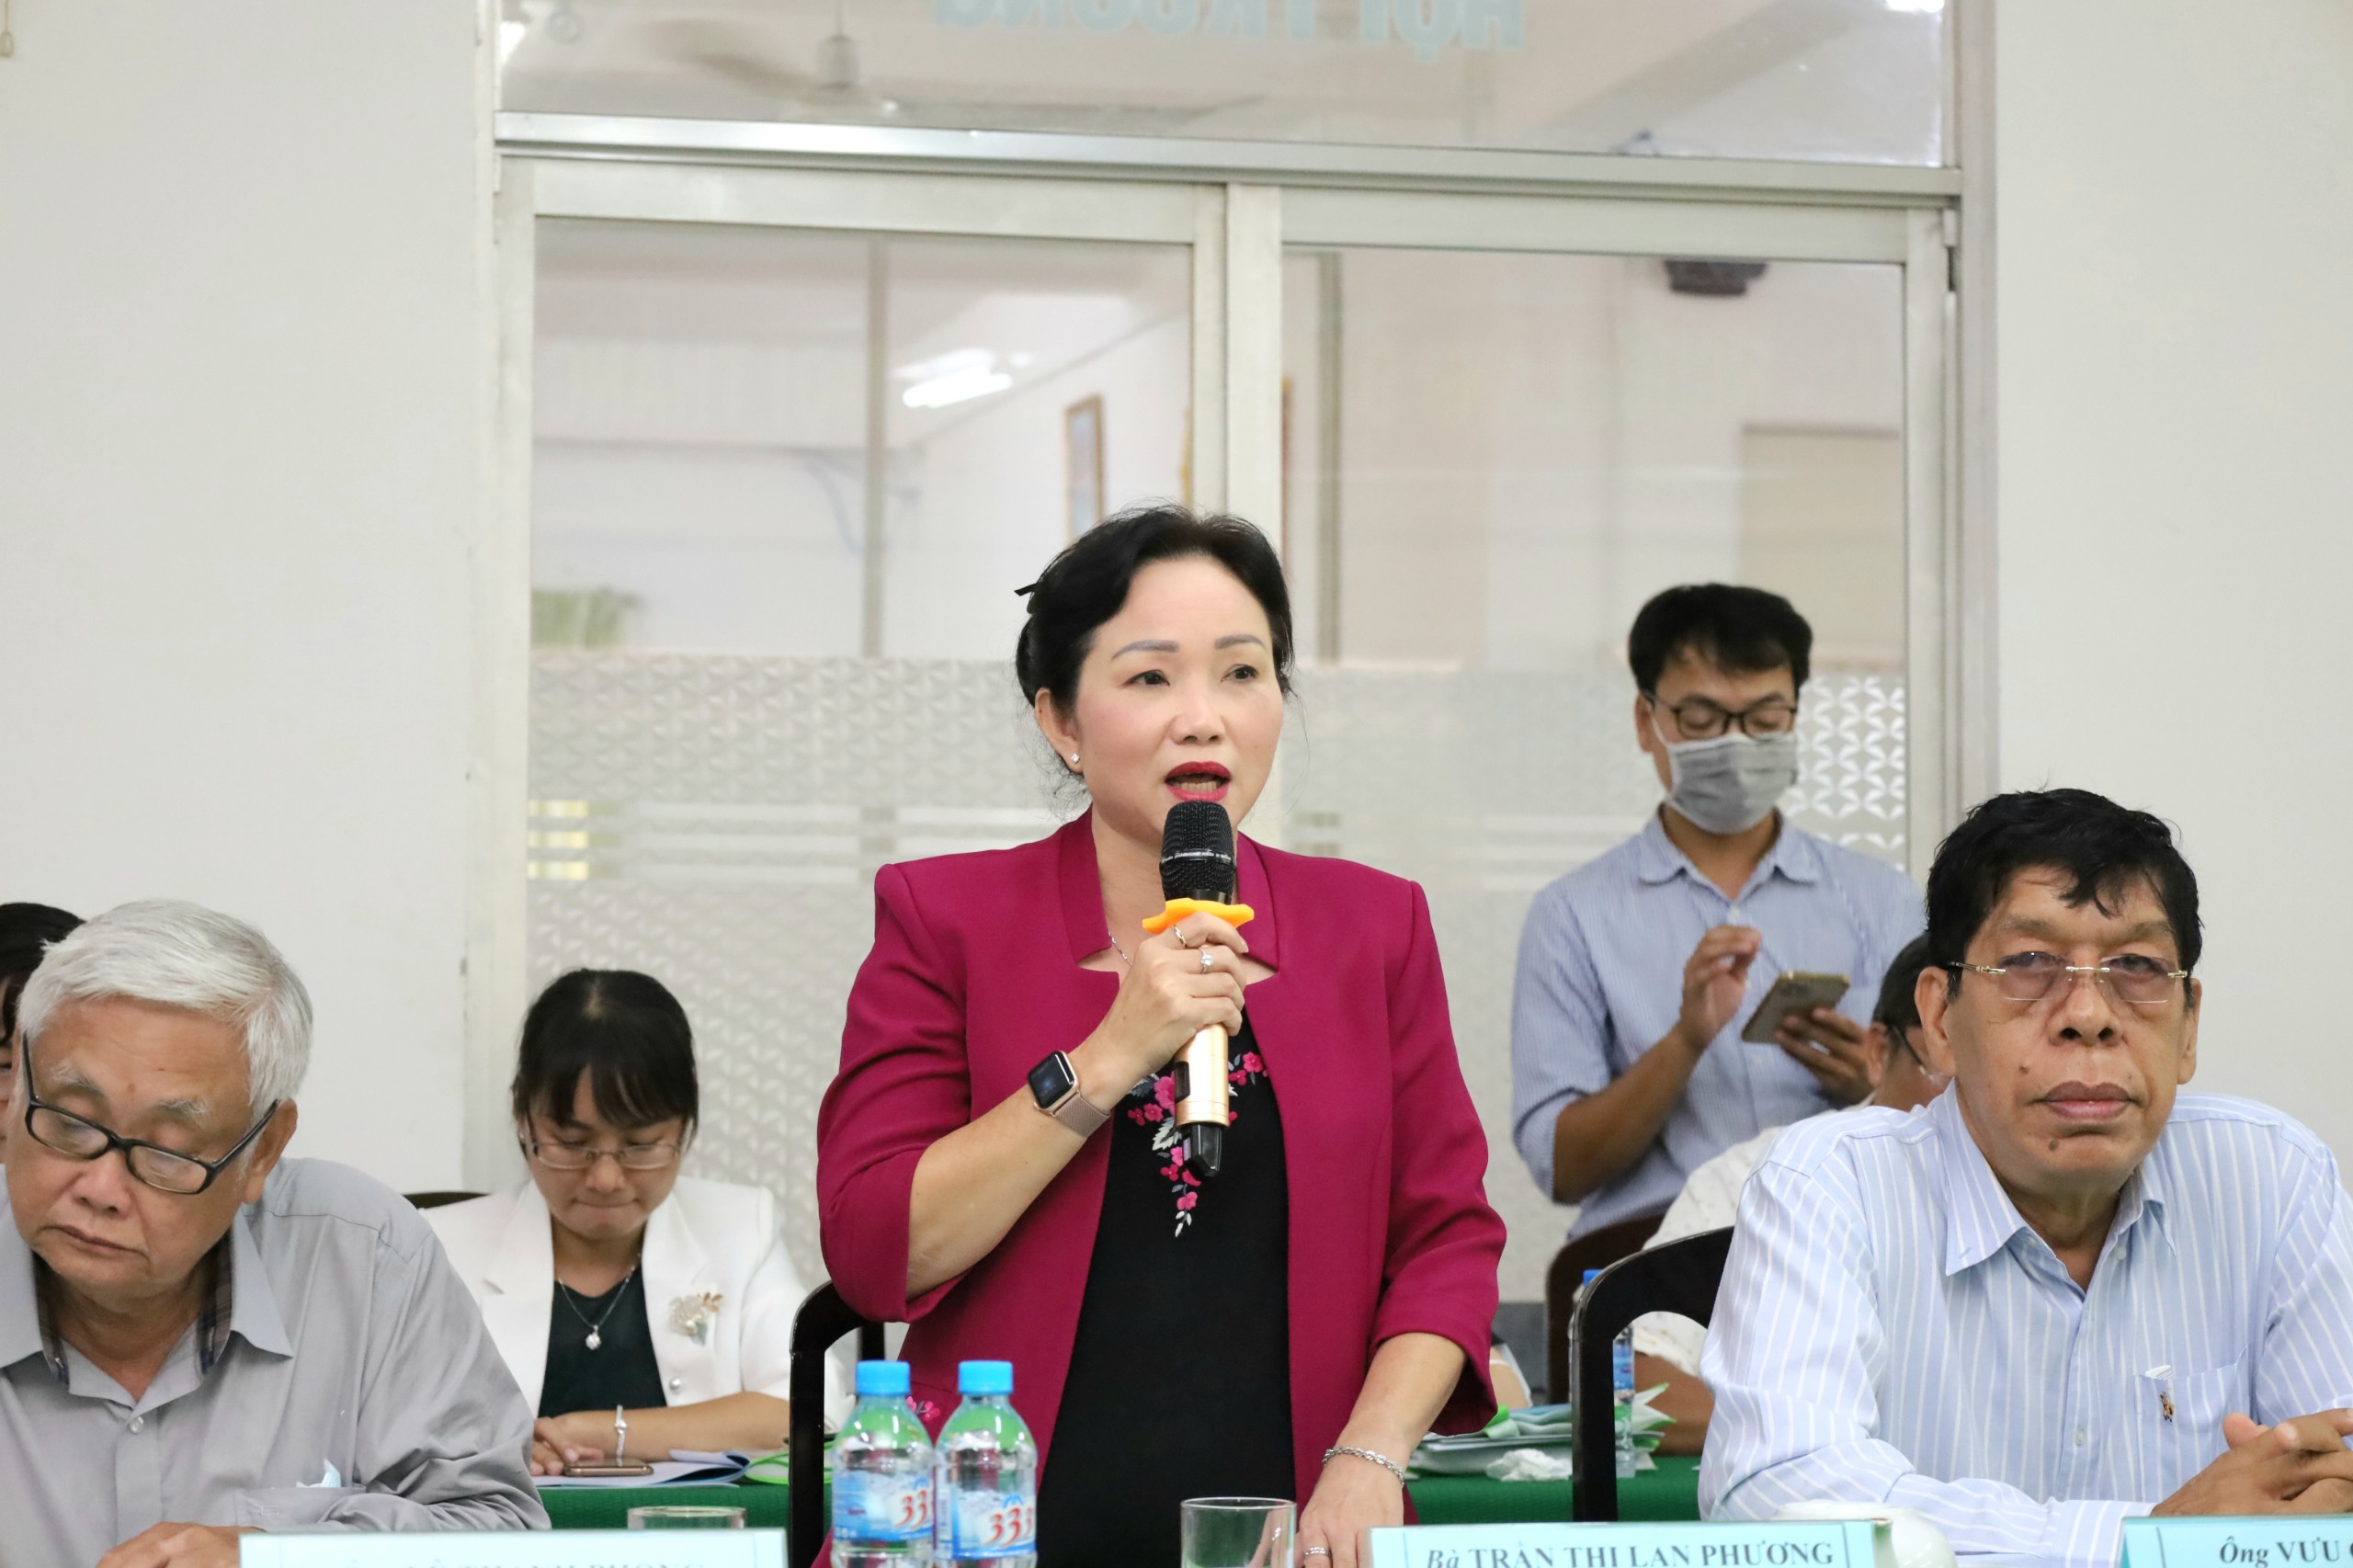 Bà Trần Thị Lan Phương - Giám đốc Sở Văn hóa, Thông tin, Thể thao và Du lịch tỉnh Bạc Liêu phát biểu tại hội nghị.